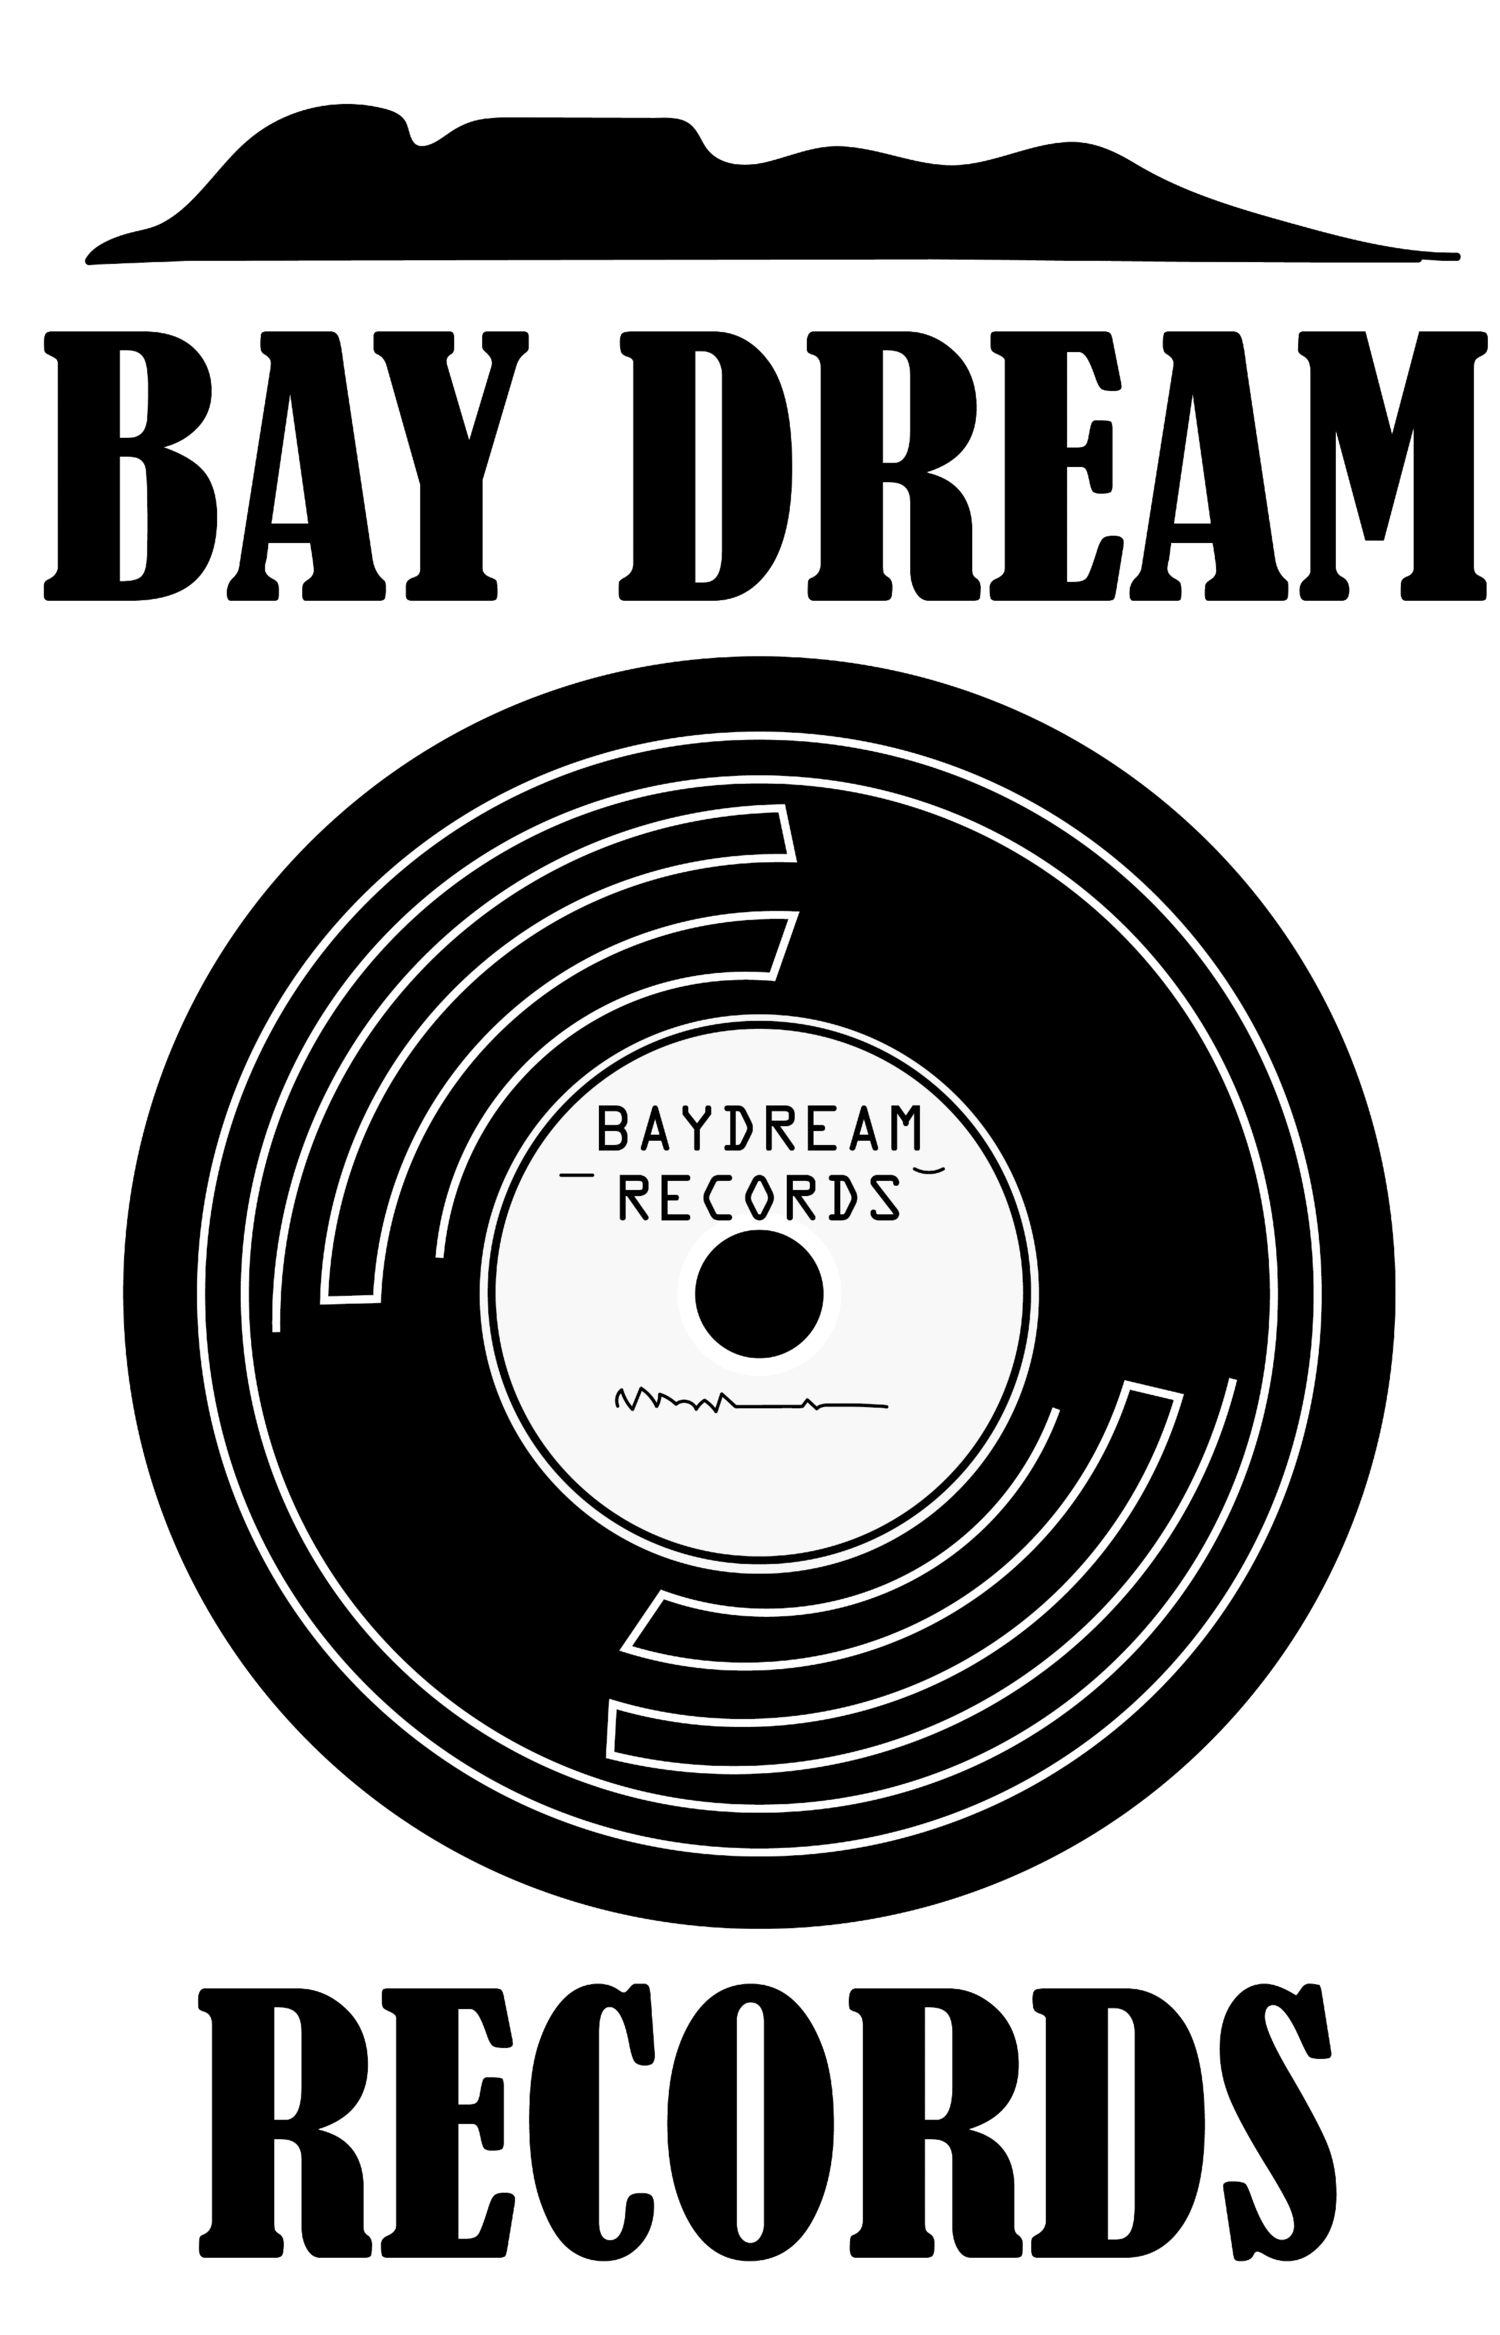 Bay Dream Records